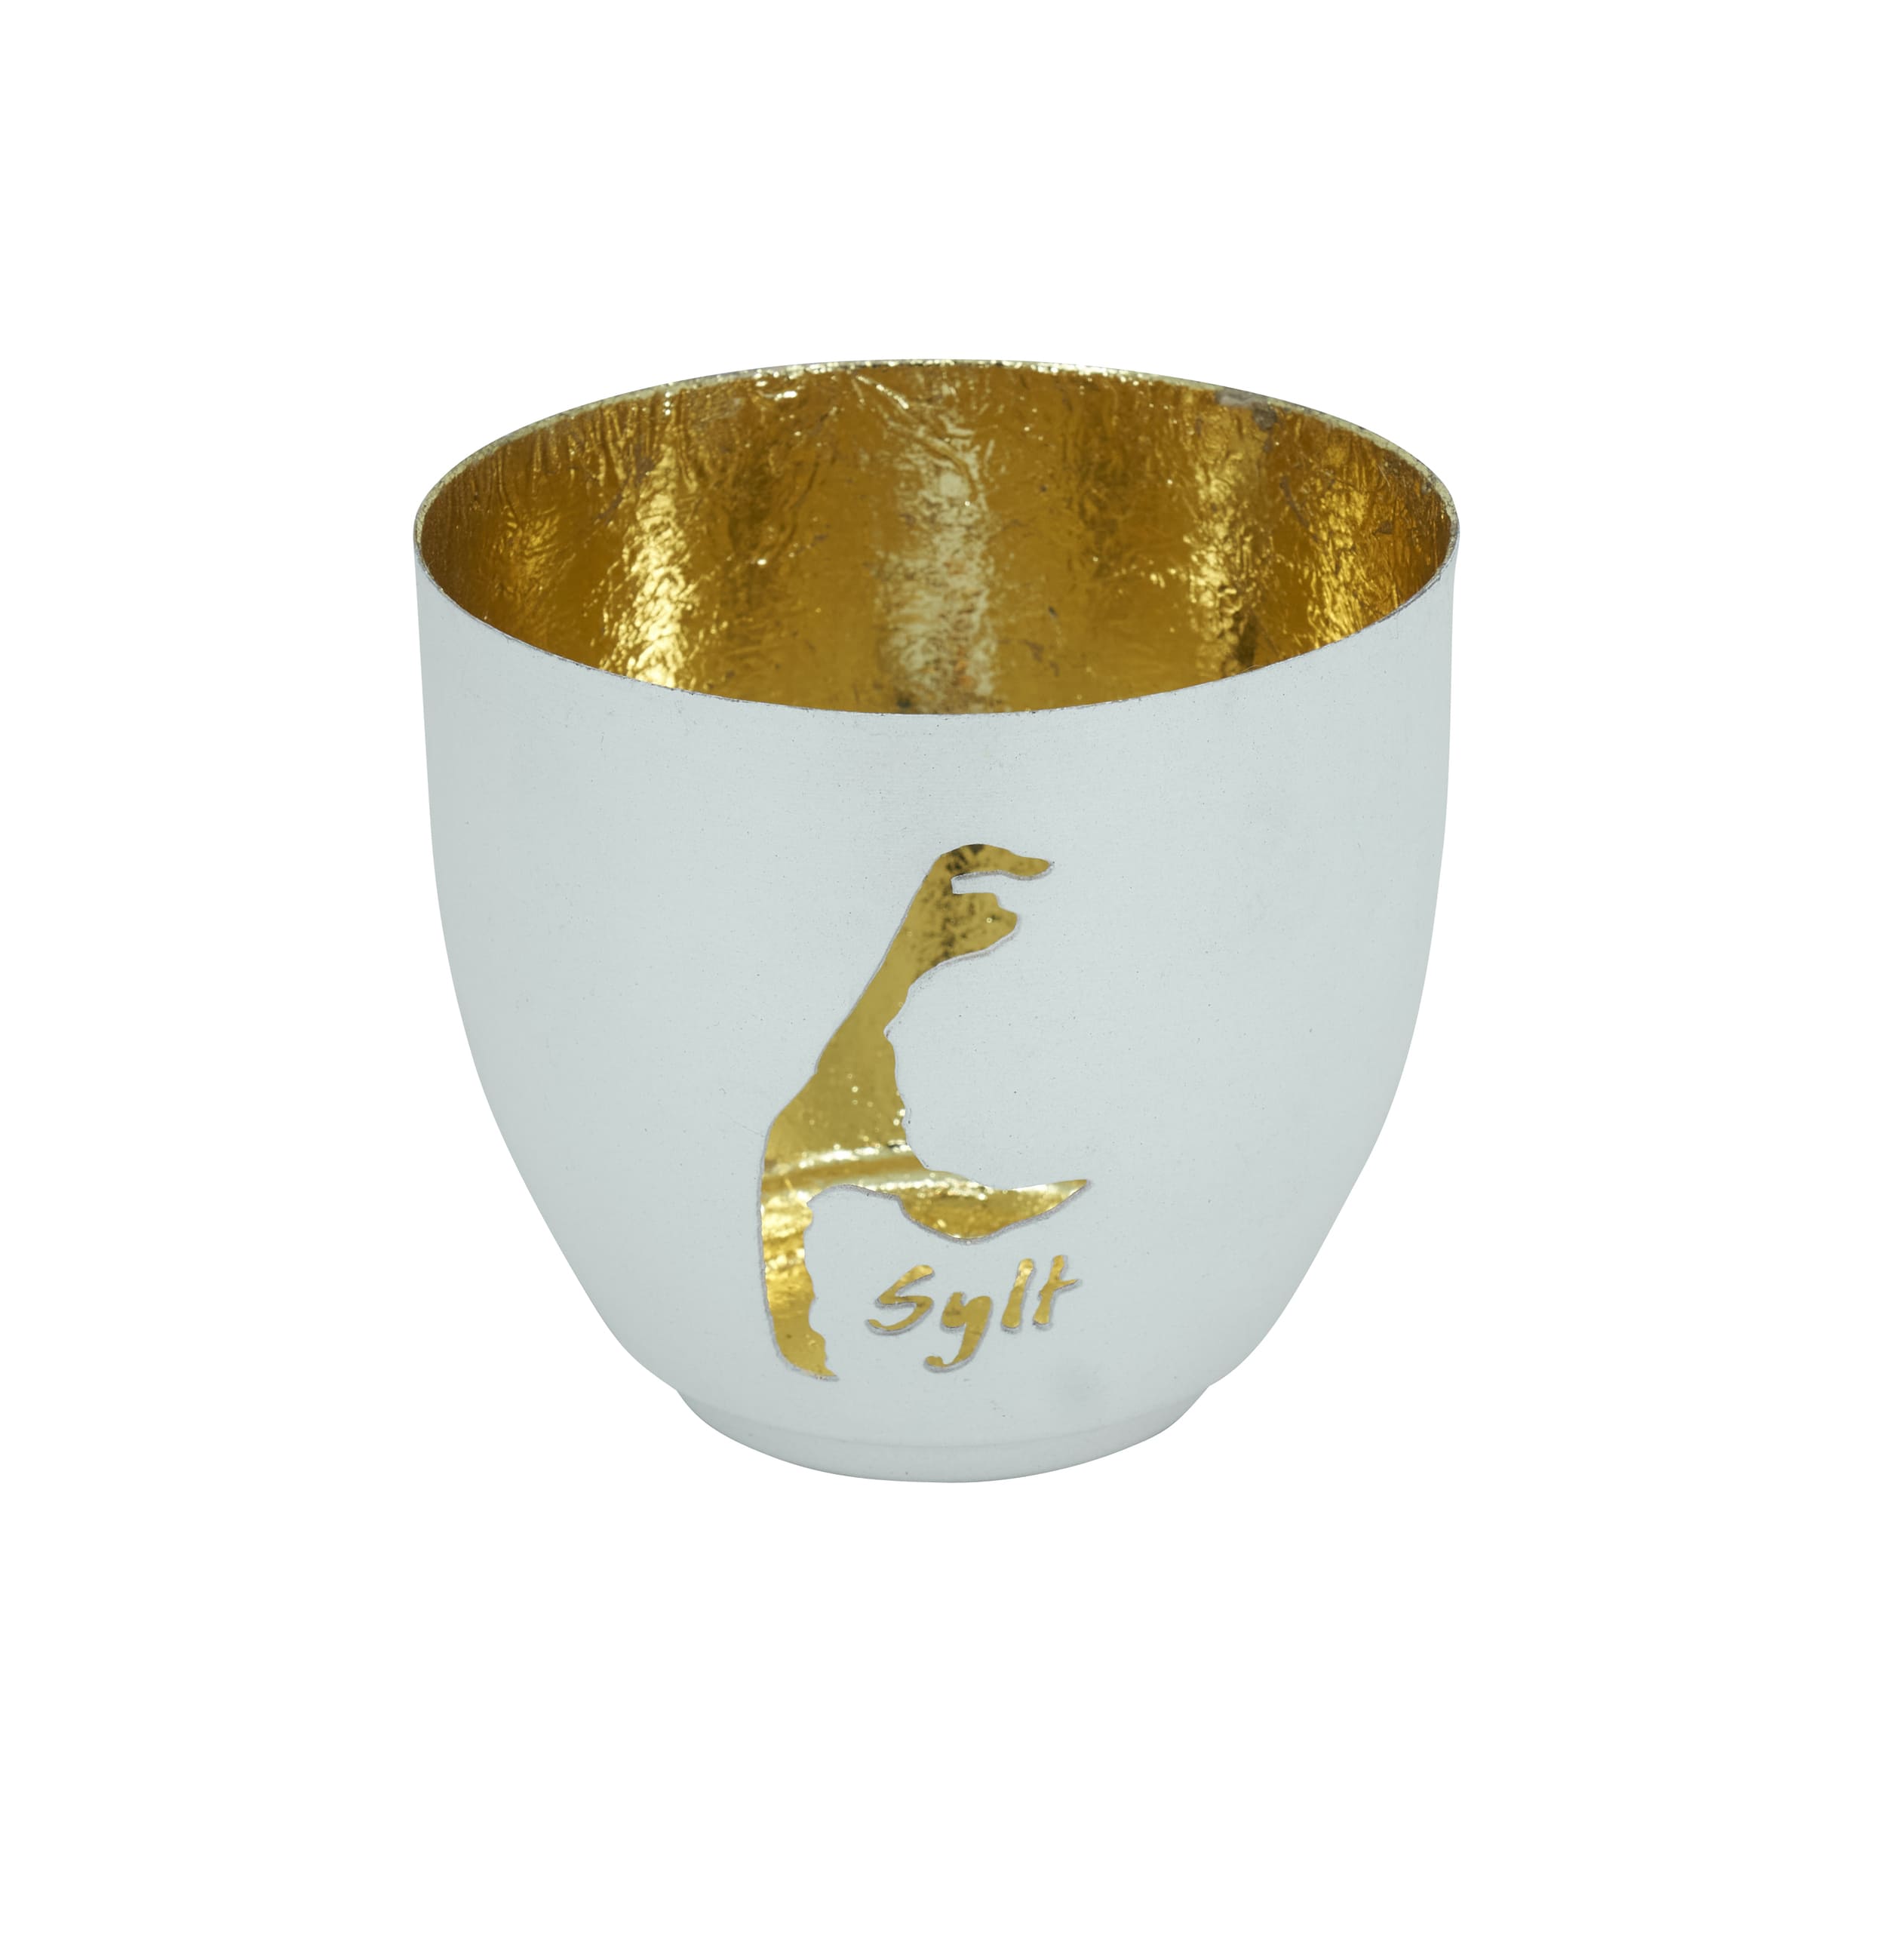 Votiv Bali Sylt powder weiß gold metallic D=10cm H=9cm